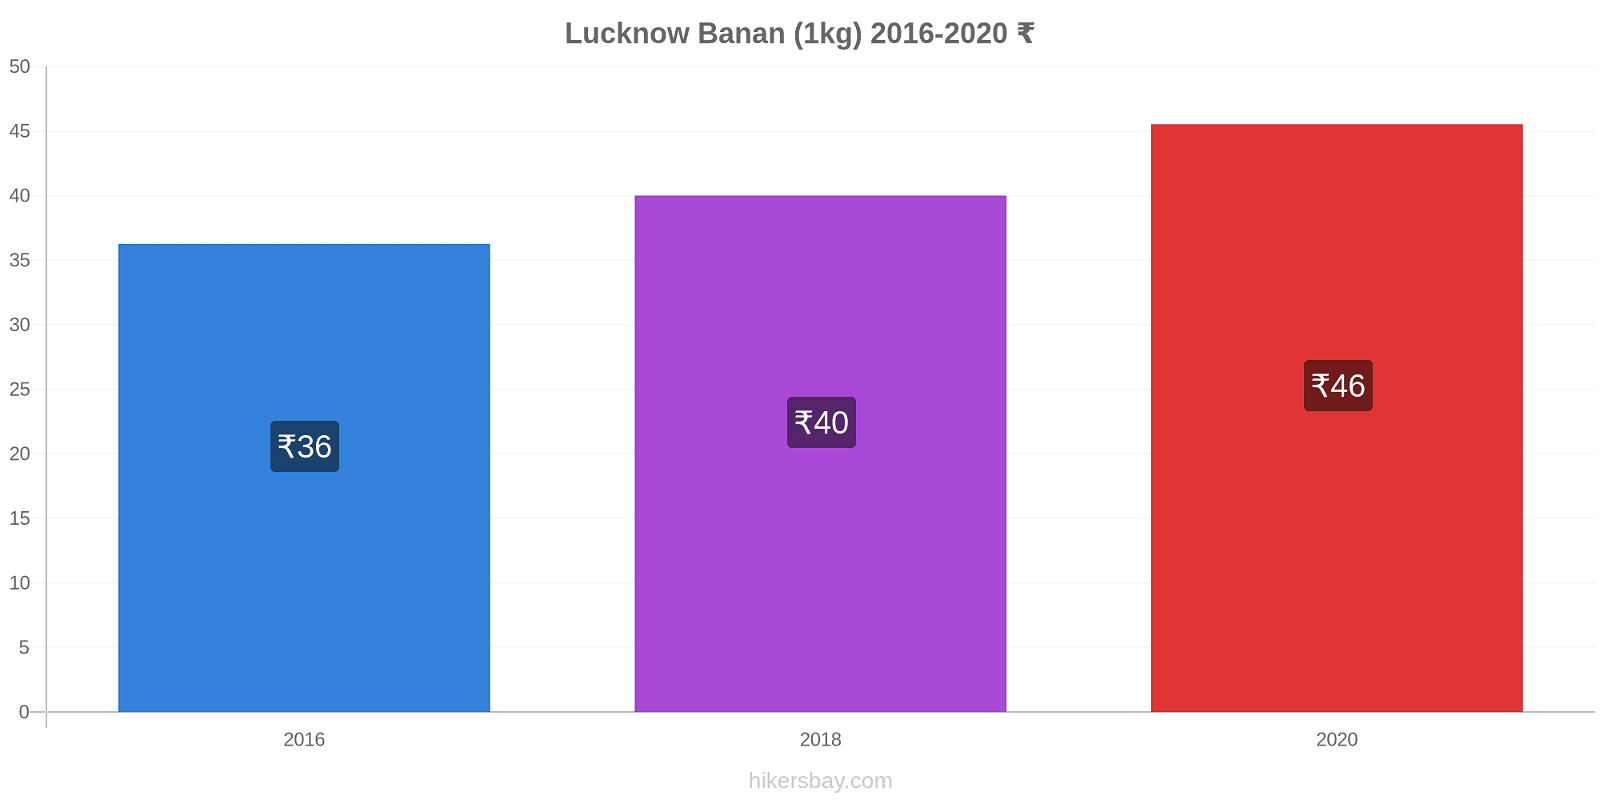 Lucknow prisændringer Banan (1kg) hikersbay.com